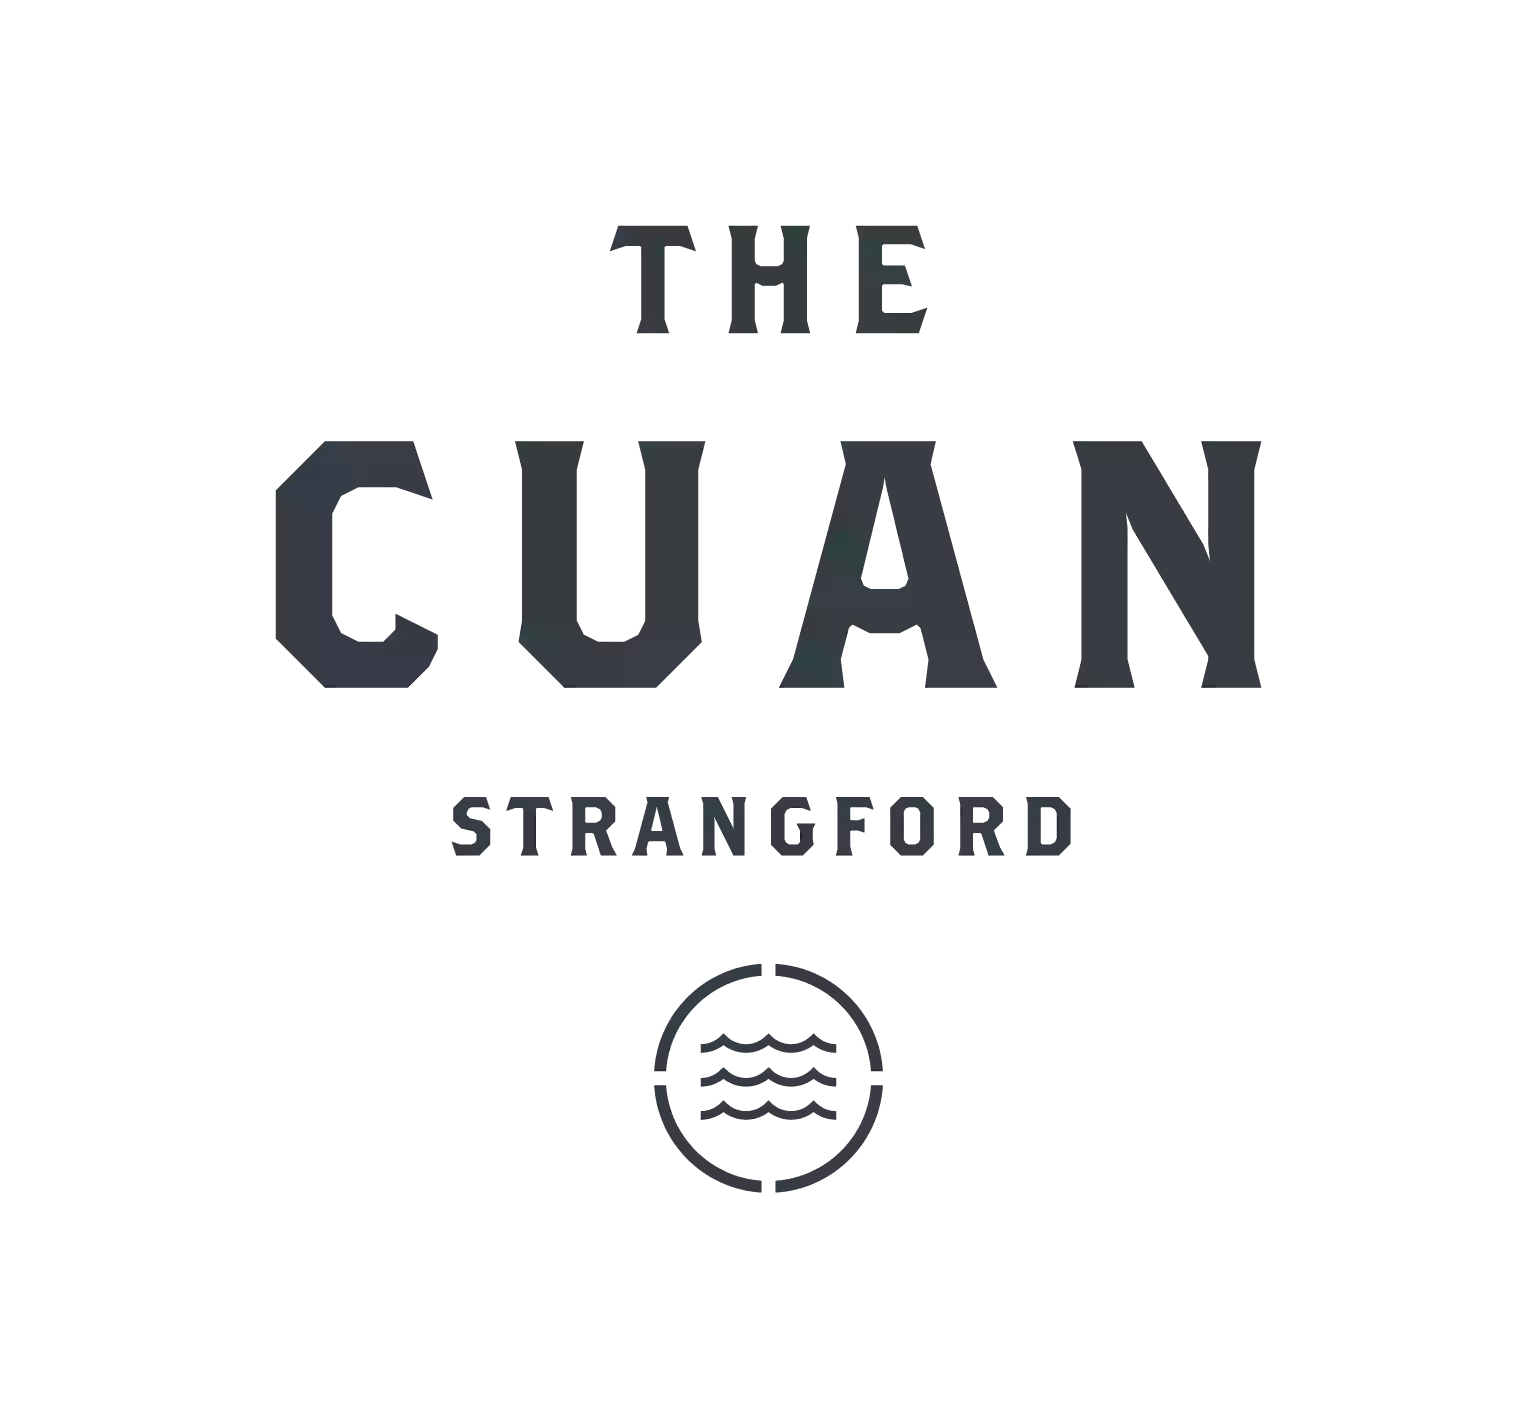 The Cuan